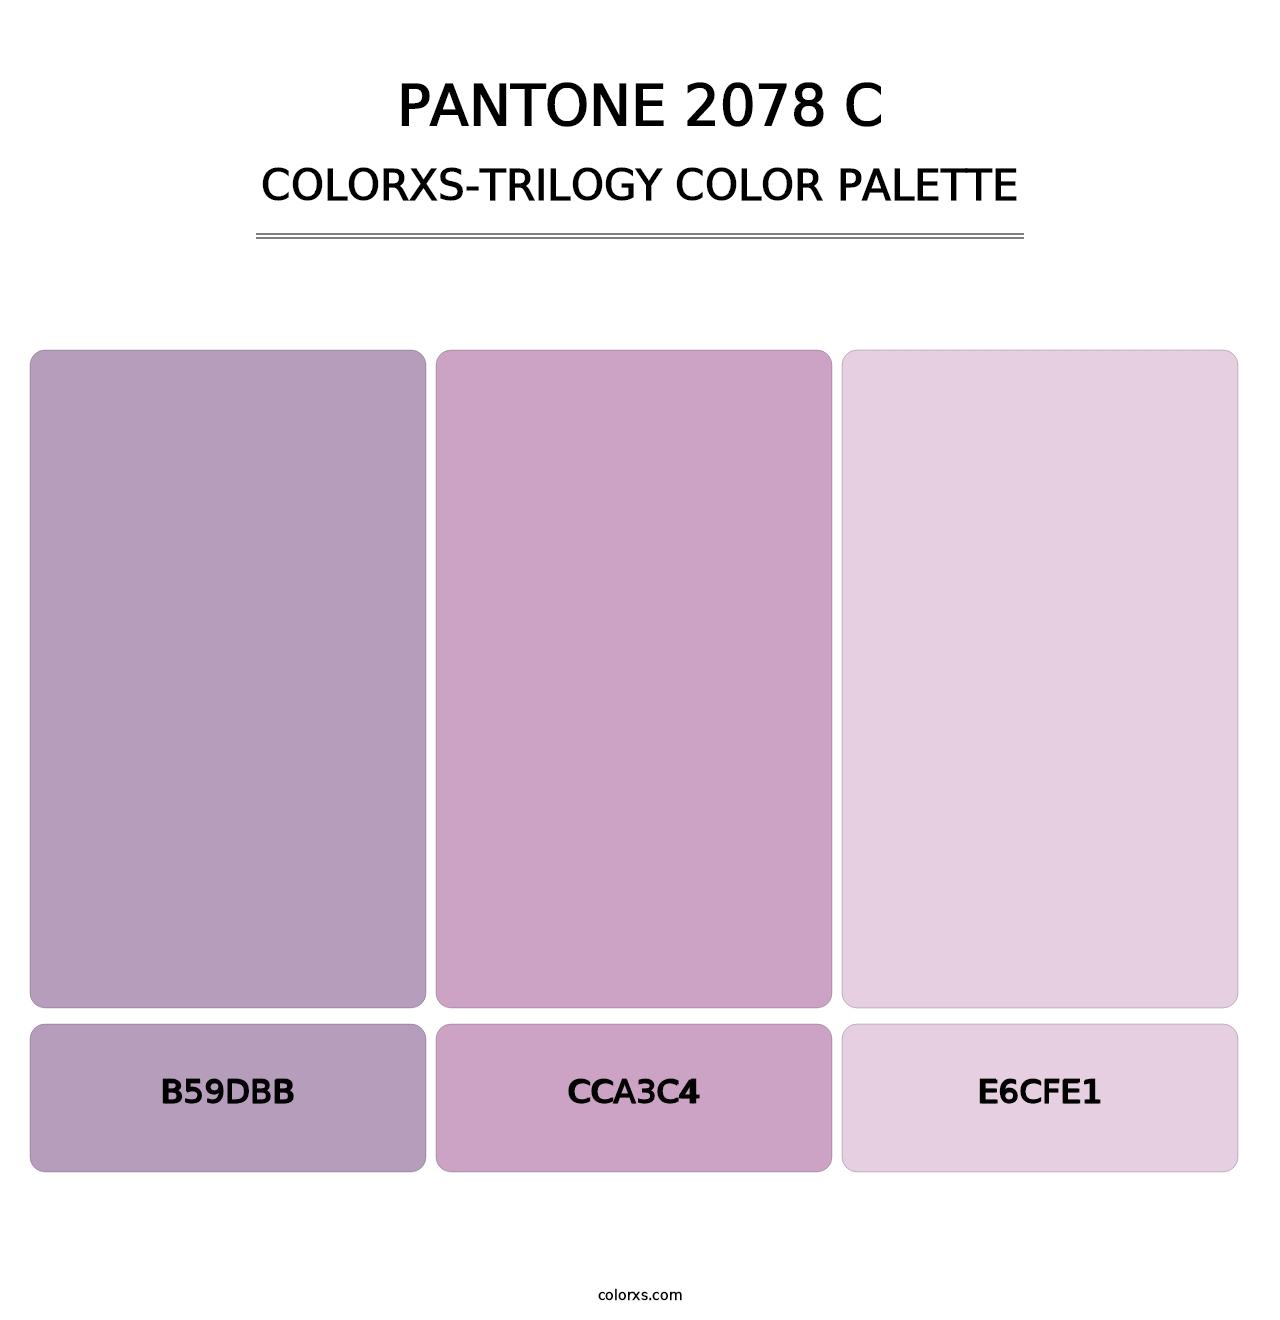 PANTONE 2078 C - Colorxs Trilogy Palette